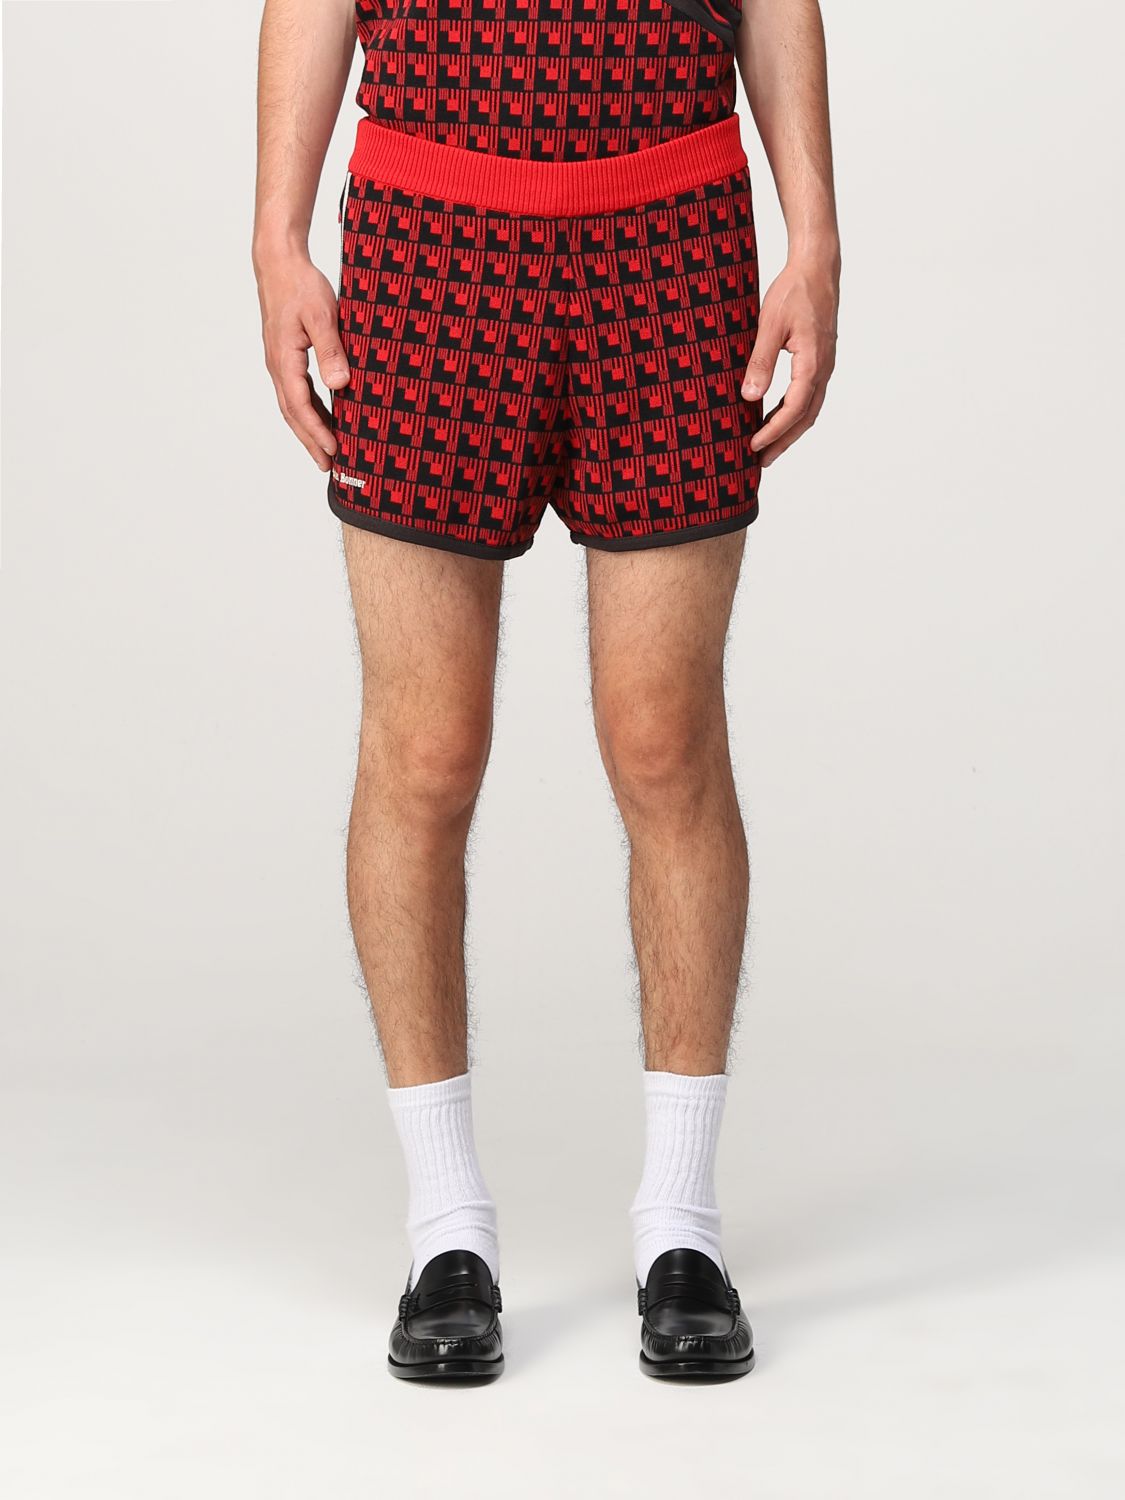 ADIDAS ORIGINALS: Pantalones cortos hombre, Rojo | Adidas Originals HG6266 en línea en GIGLIO.COM